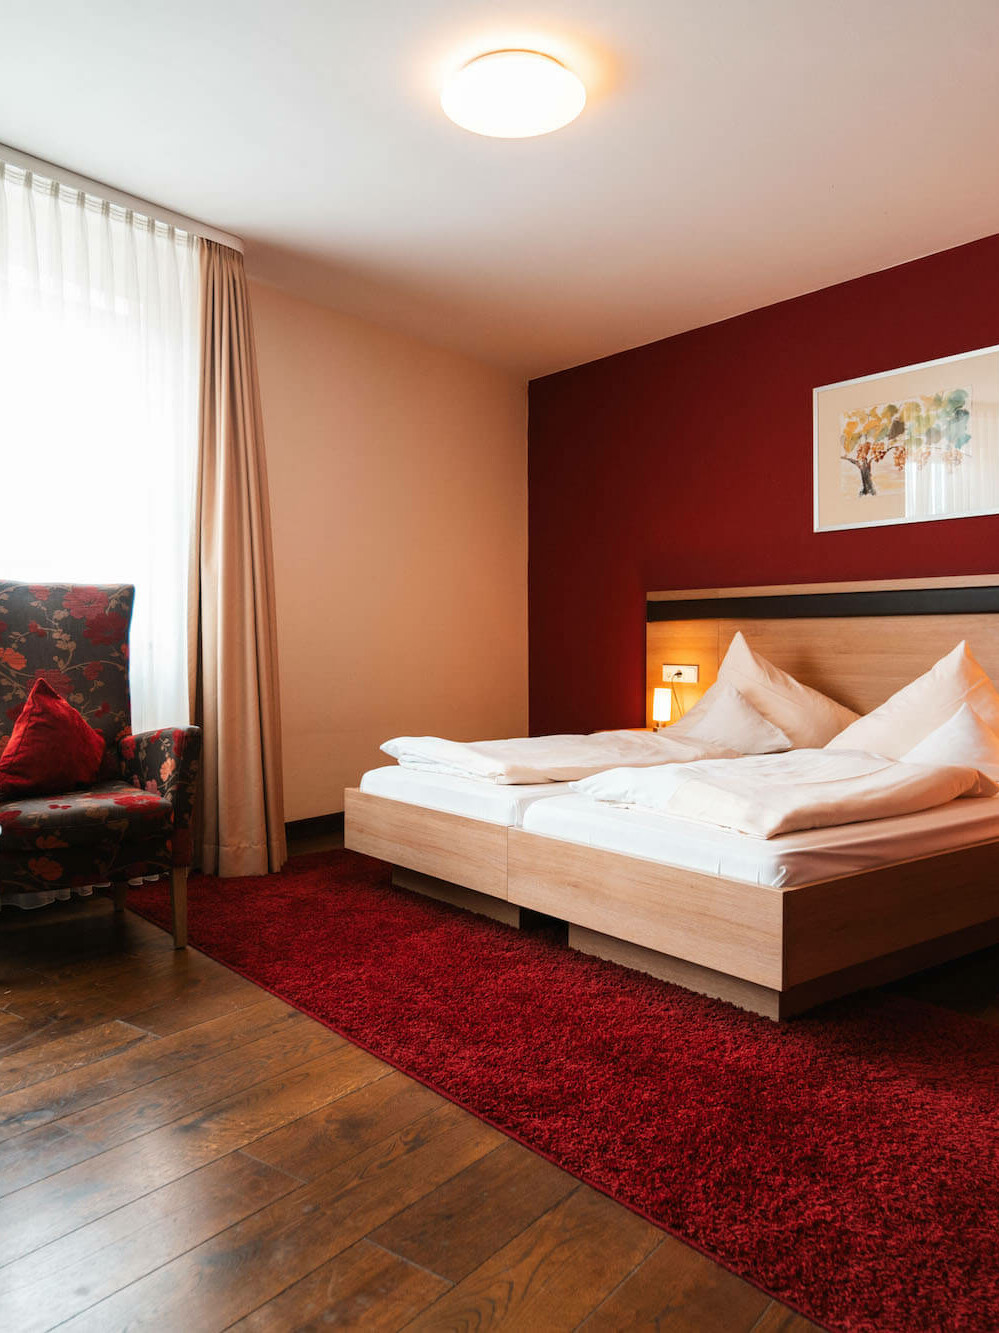 Komfort, Luxus, Entspannung, großzügige Zimmer, Hotel Wiesenbronn